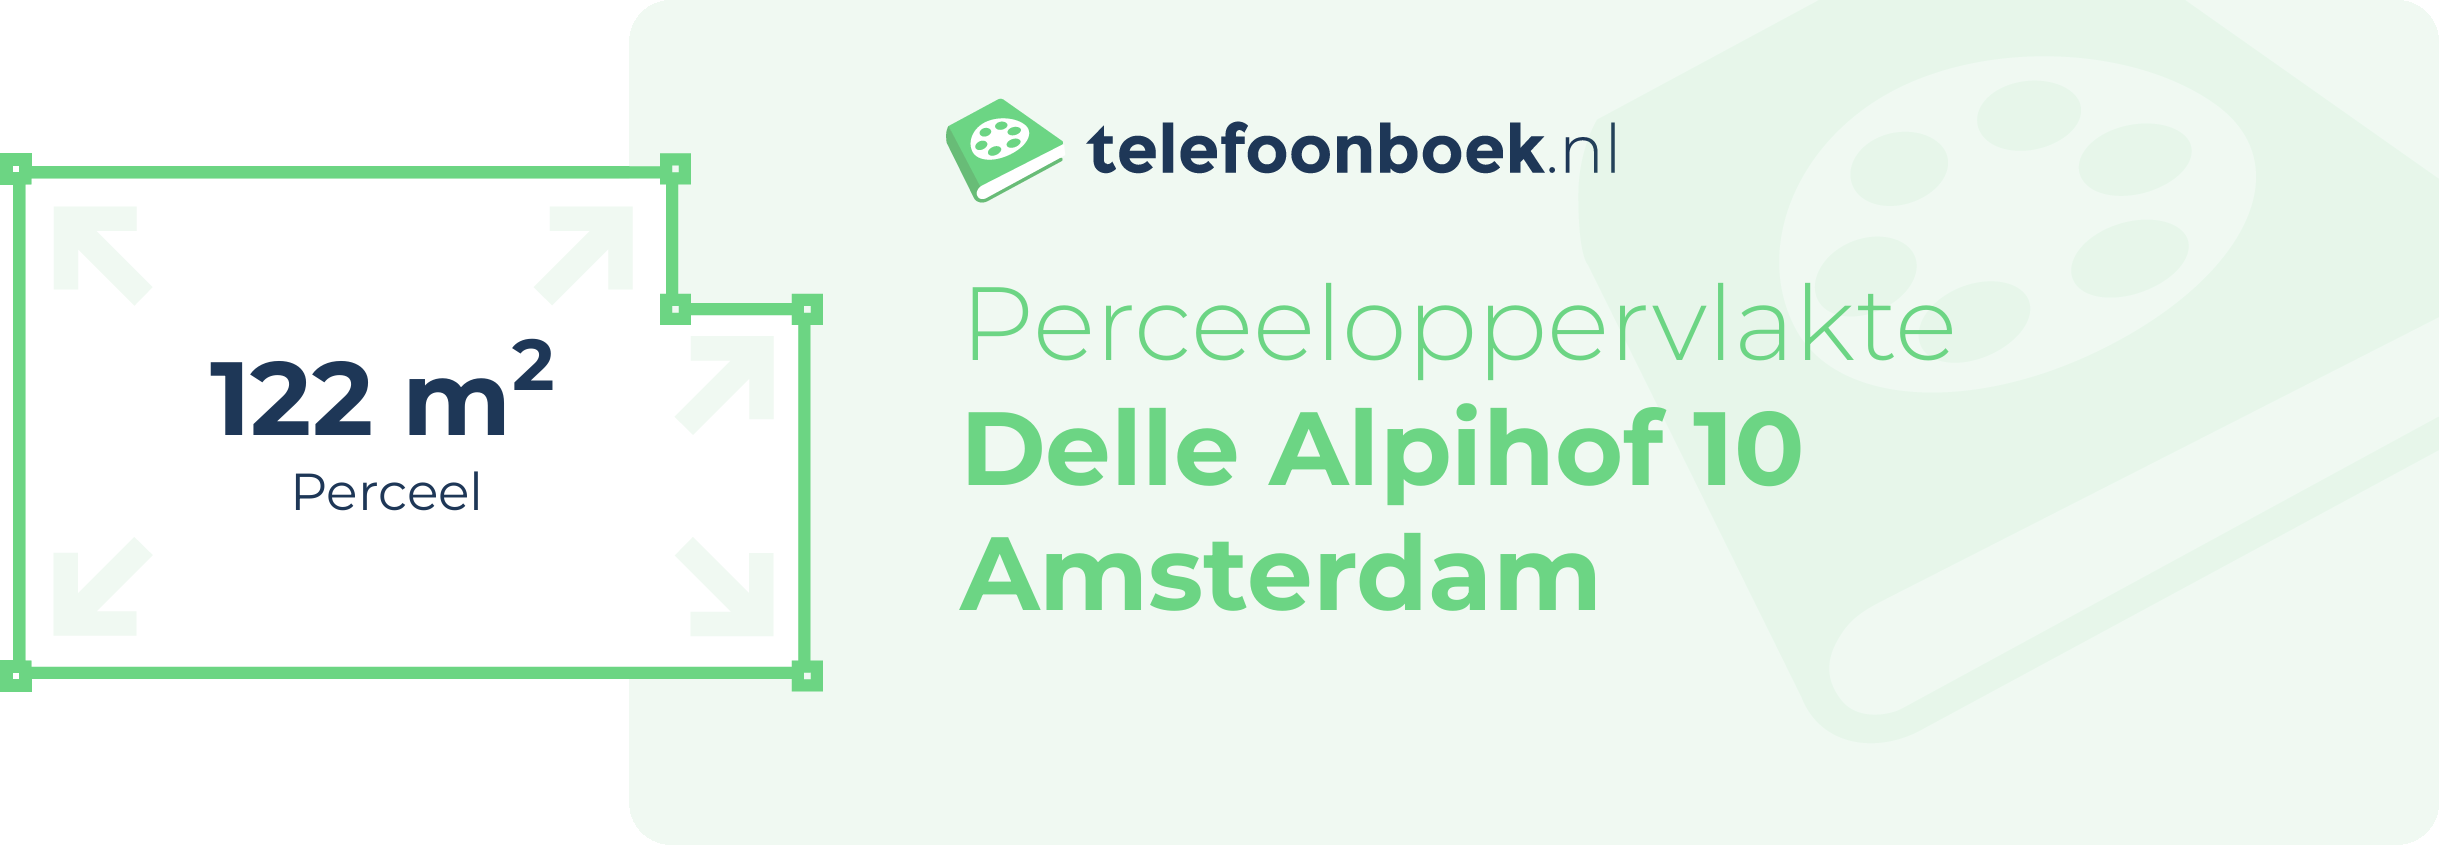 Perceeloppervlakte Delle Alpihof 10 Amsterdam